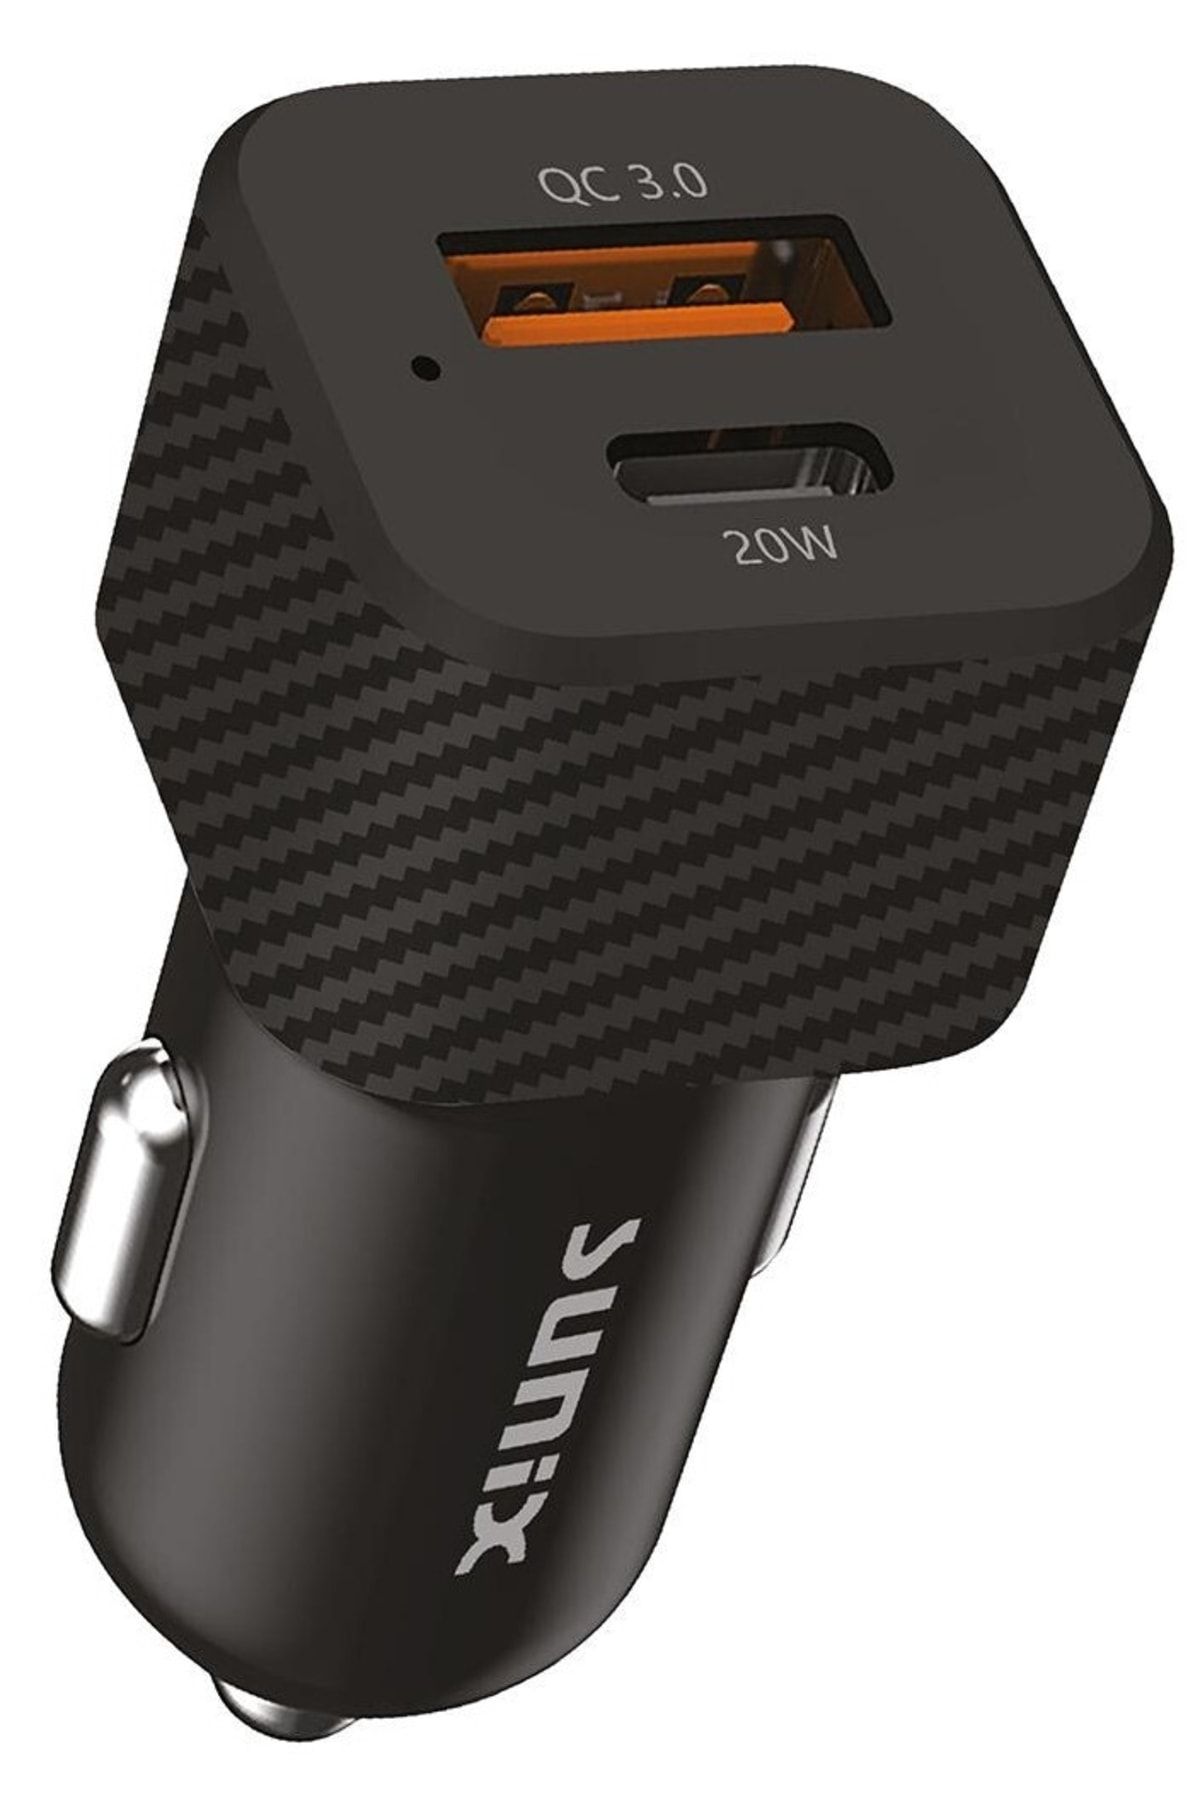 Sunix Araç Çakmak Şarj Aleti Qualcomm3.0 20w Hızlı Şarj Type C Ve Usb Çıkış